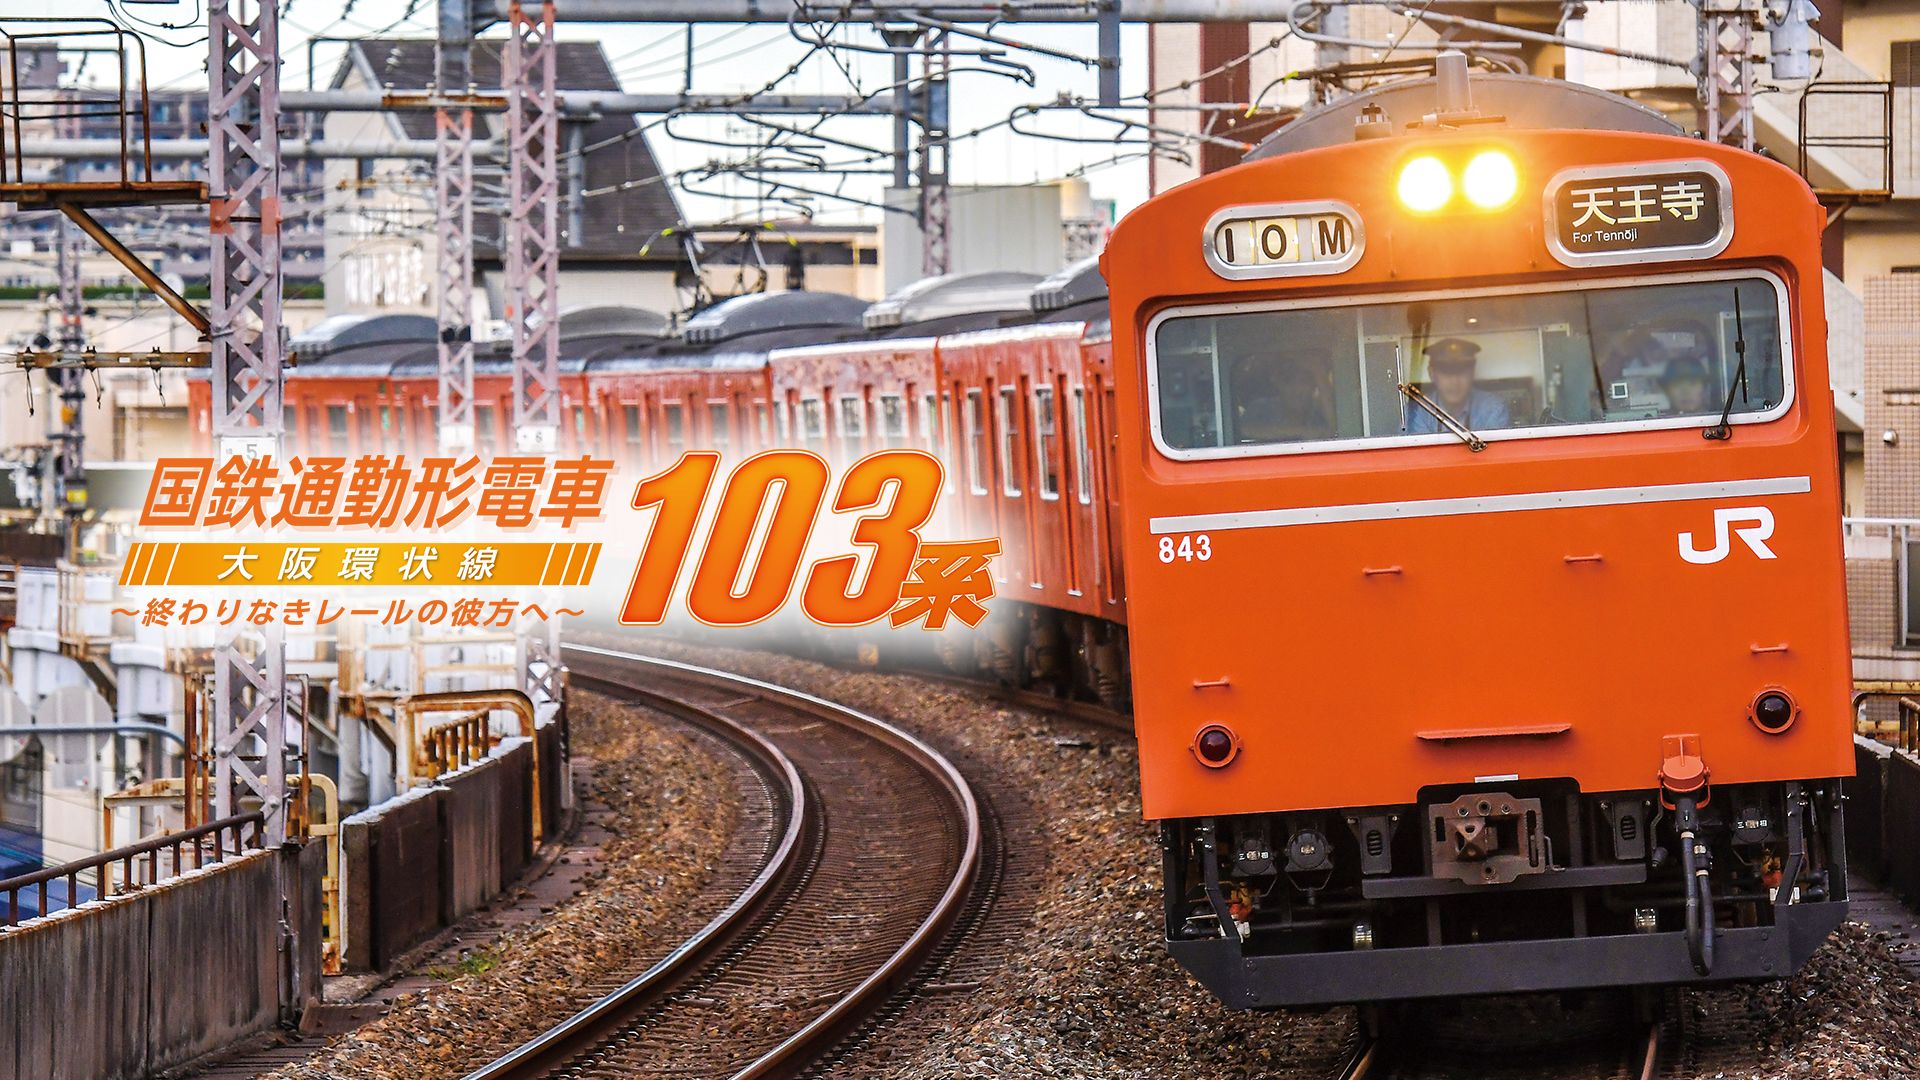 国鉄通勤形電車103系 大阪環状線 〜終わりなきレールの彼方へ〜